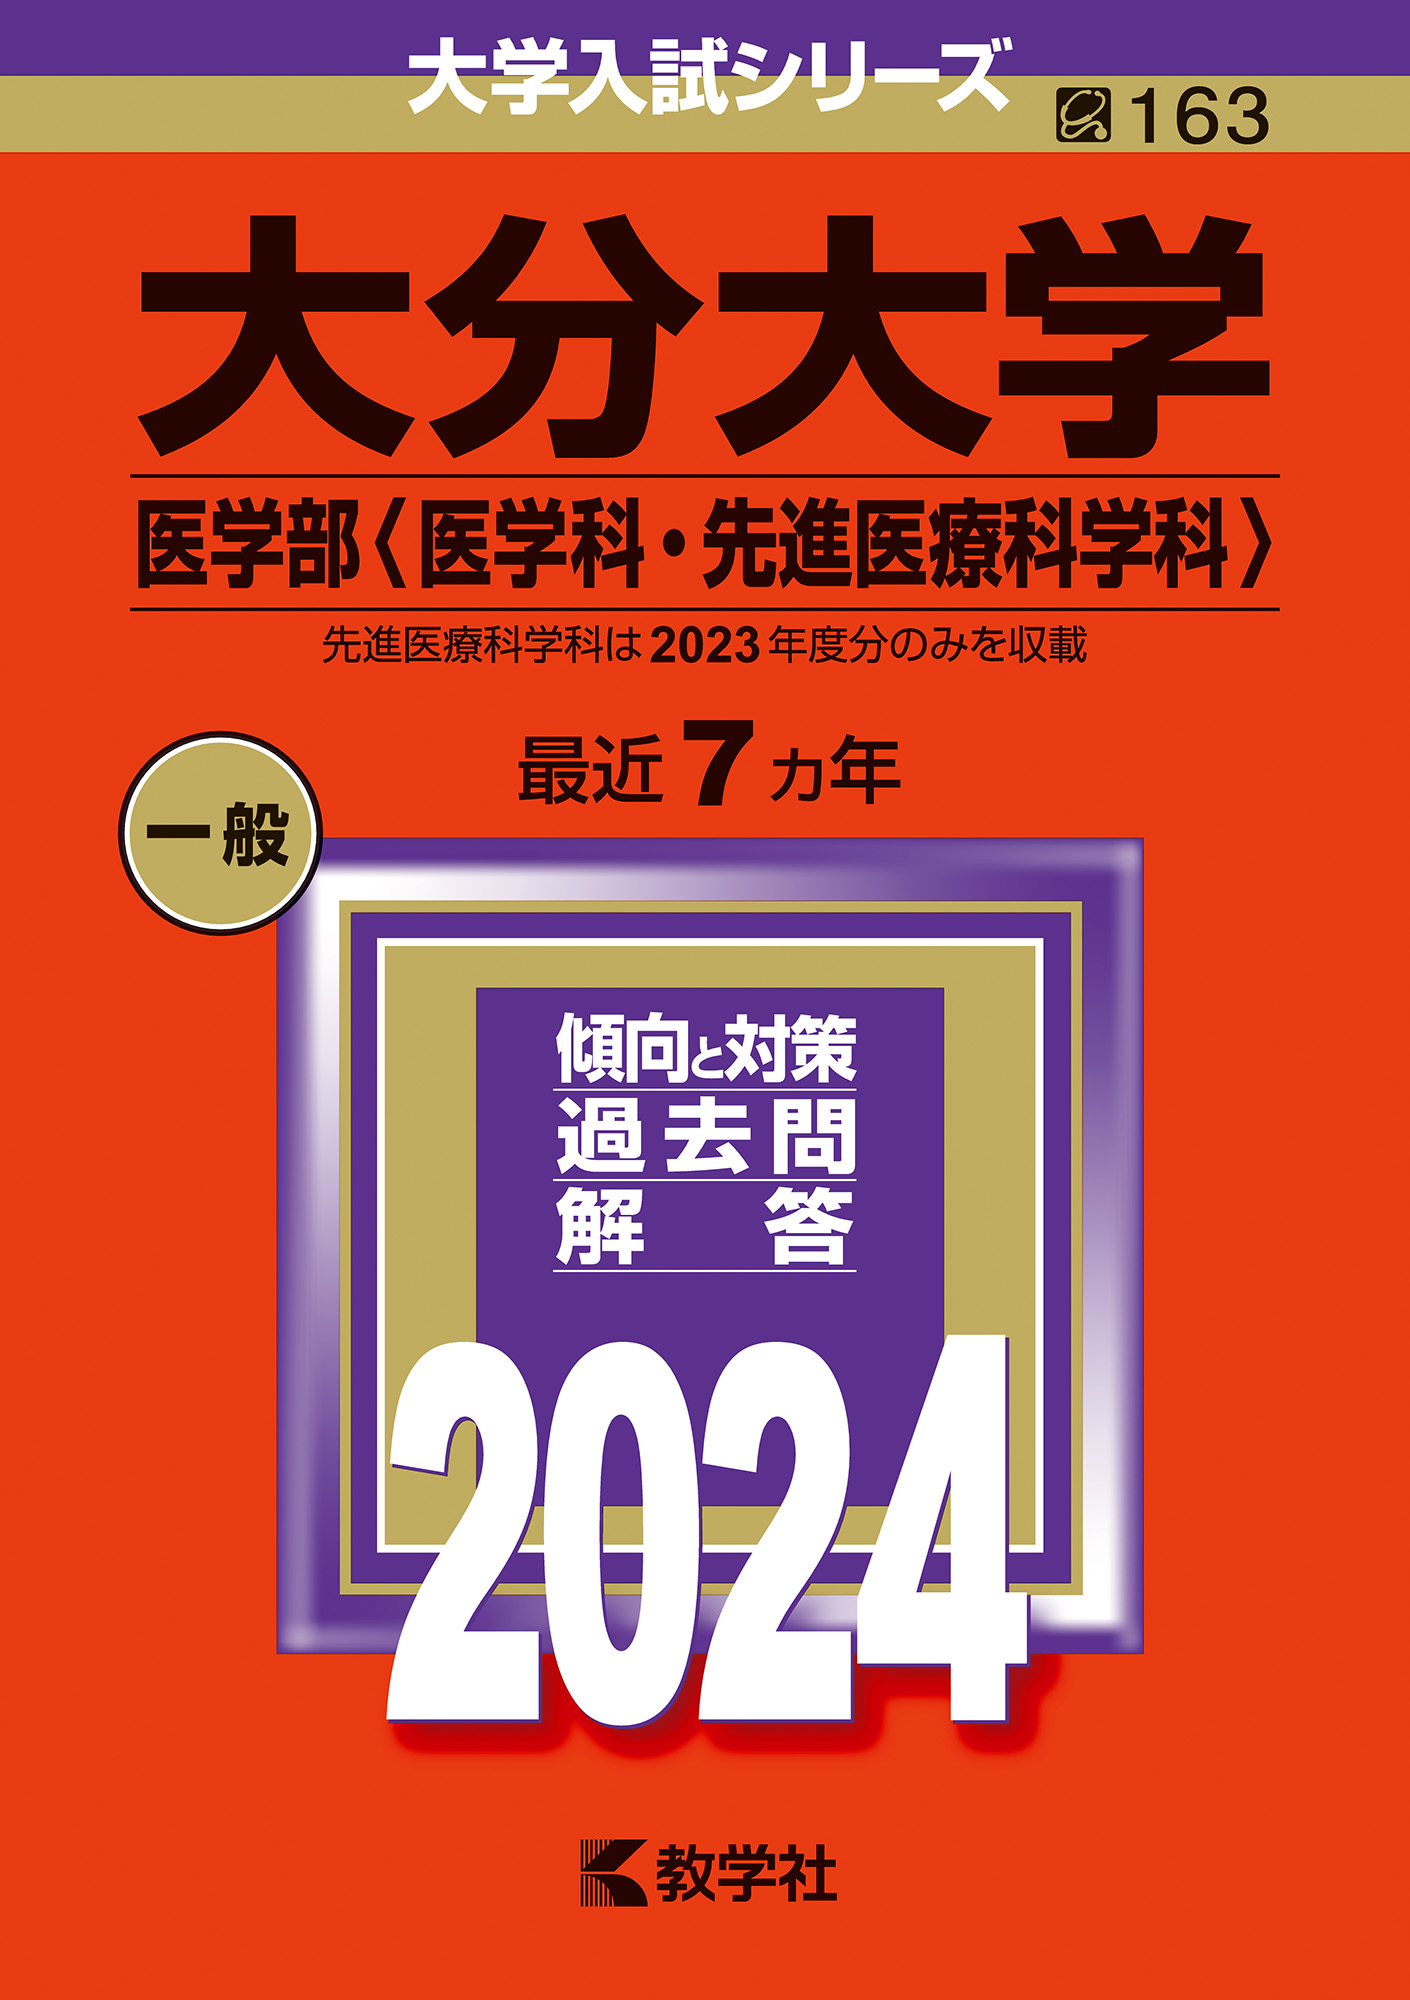 赤本☆東京農工大学2011・2014・2017・2020・2023年版☆15年分